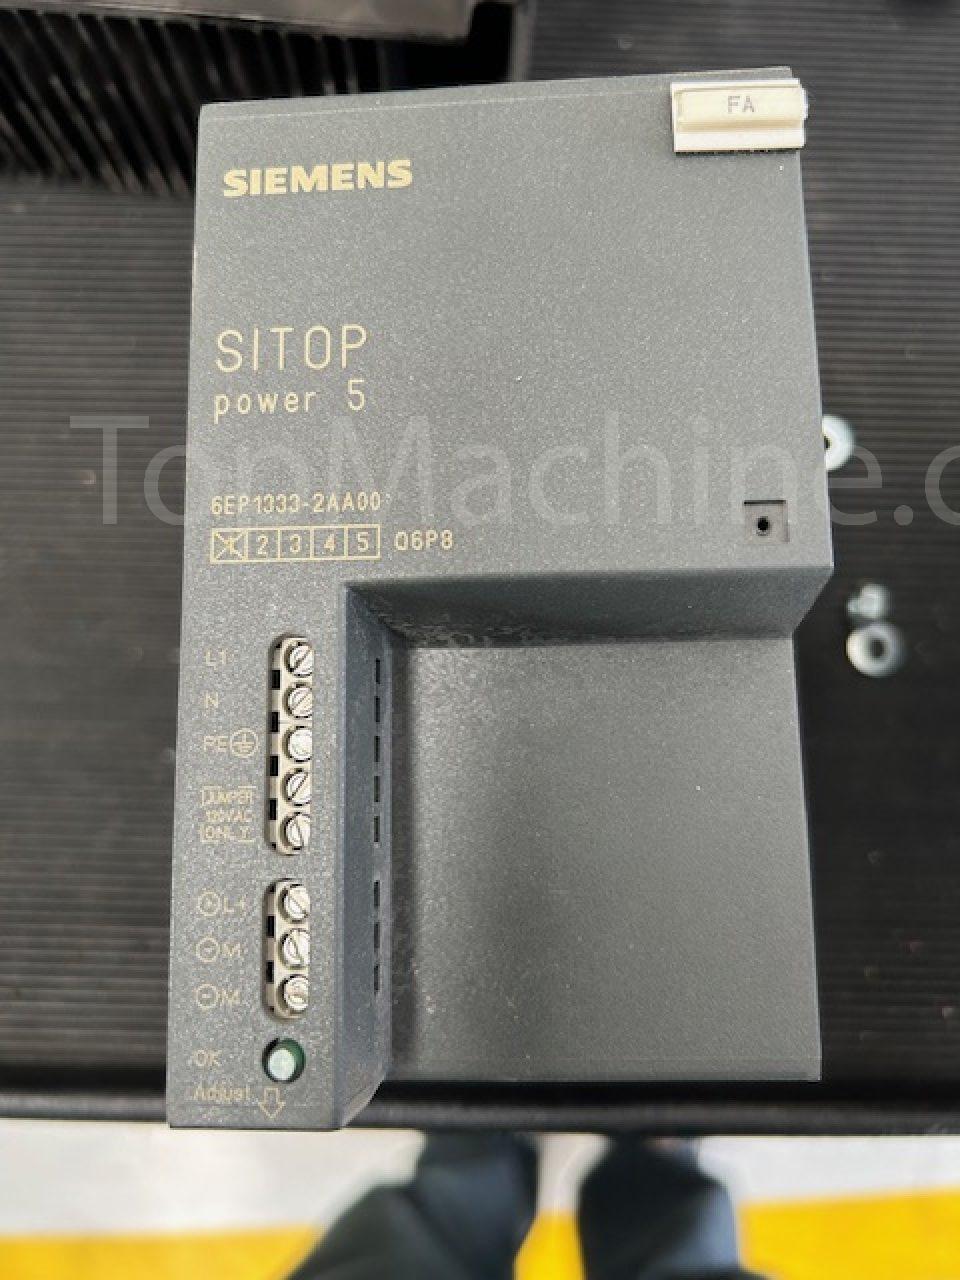 Used Siemens Sitop Power 5 Yedek Elektriksel